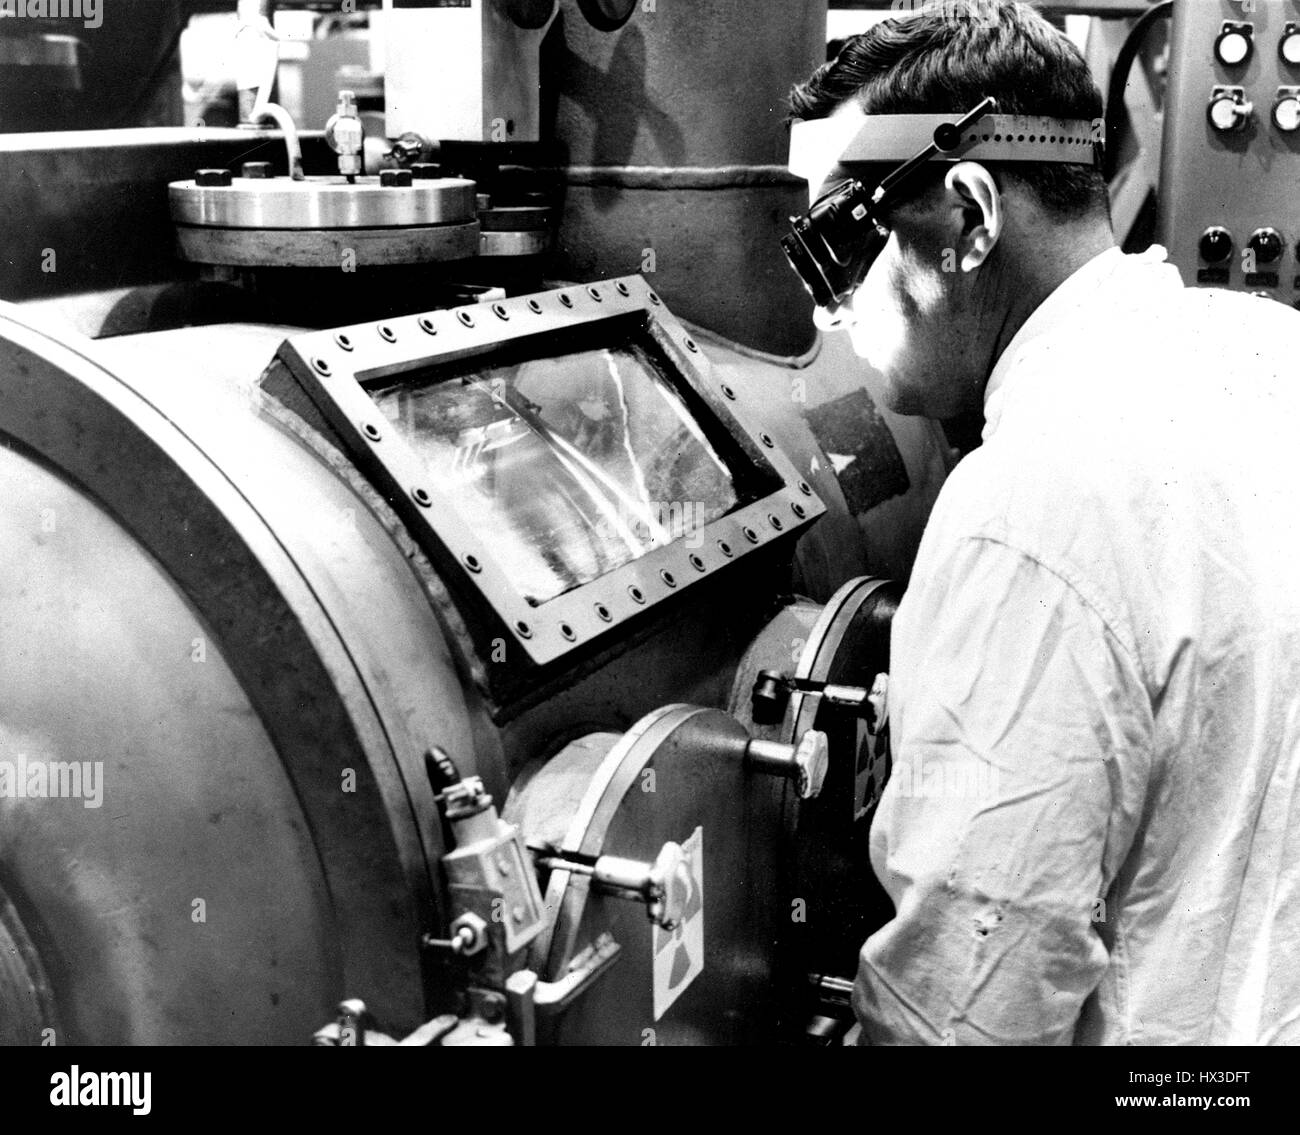 Elektronenstrahlschweißen, entwickelt in erster Linie für die Herstellung von Brennelementen, wurde für den Einsatz in allen Bereichen der industriellen Schweißen, Richland, Washington, 1966 angepasst. Bild mit freundlicher Genehmigung US Department of Energy. Stockfoto